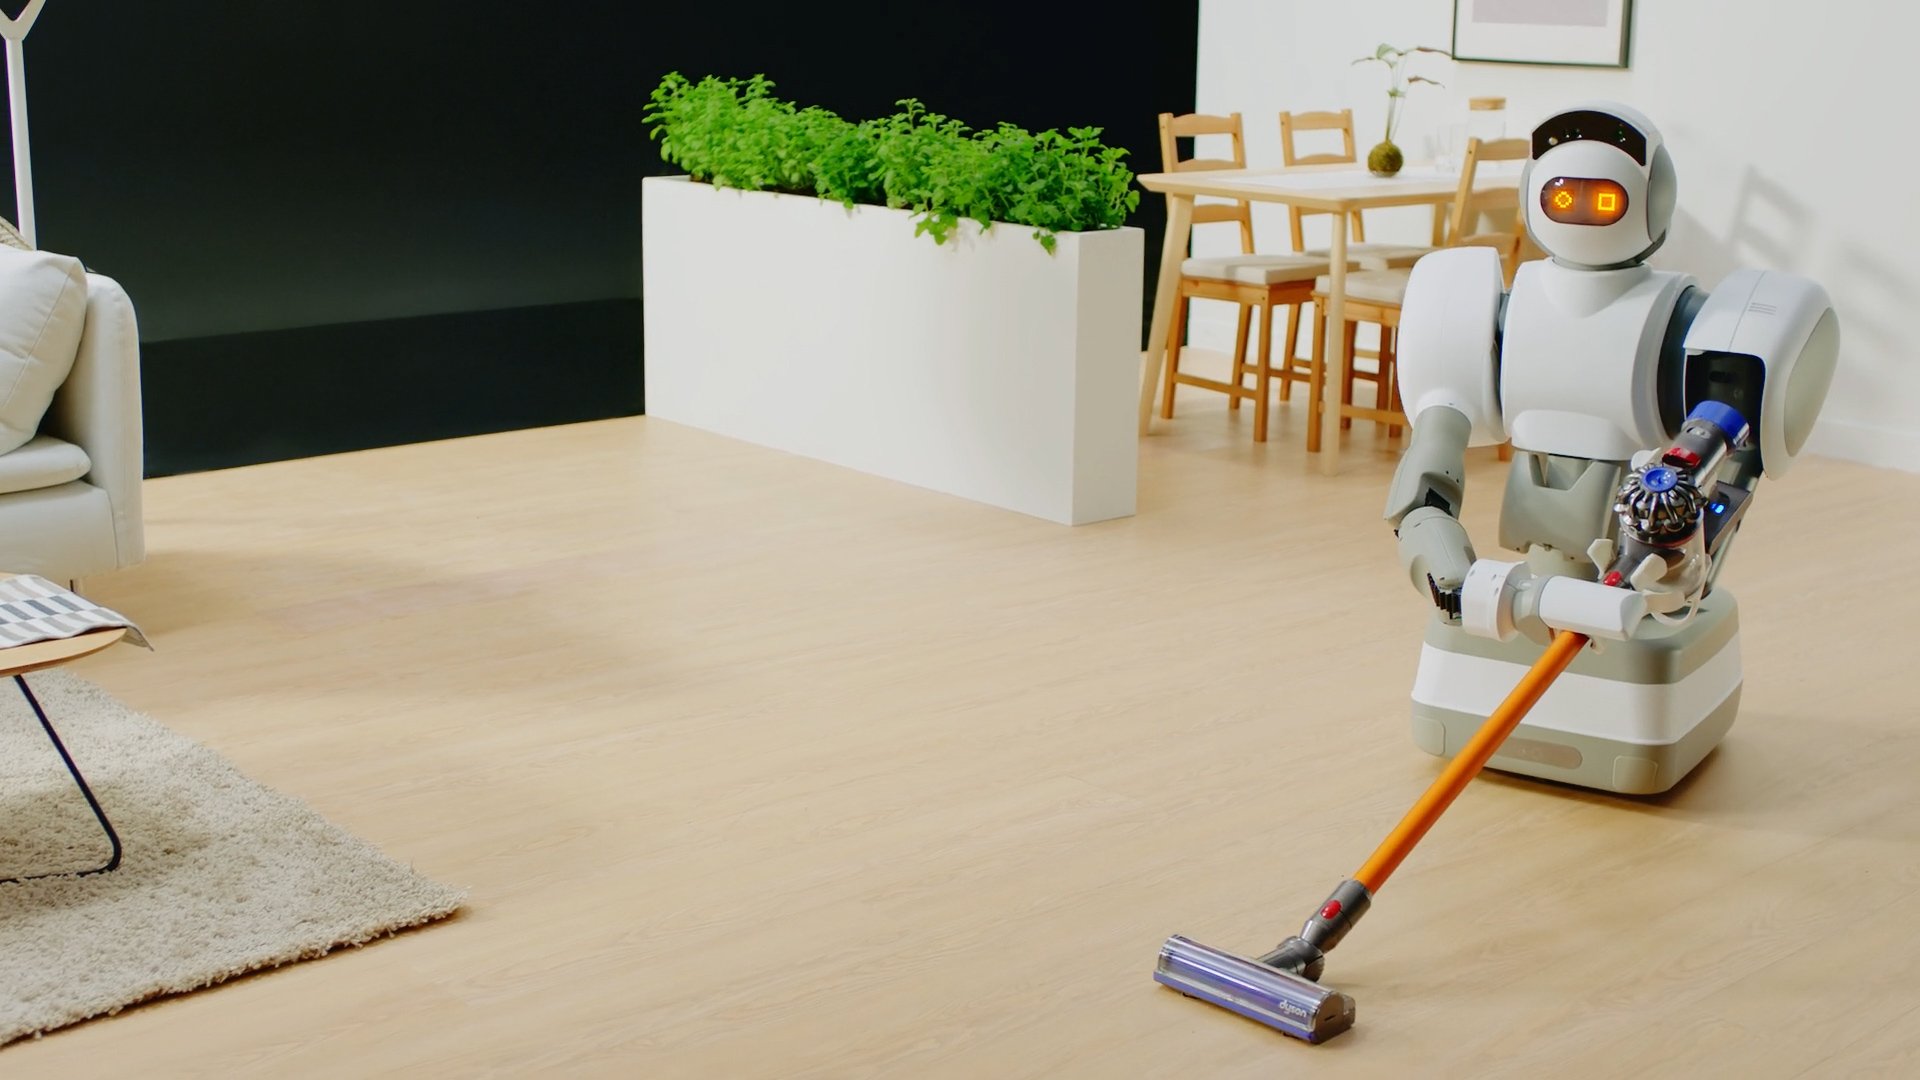 Future cleaning. Робот пылесос Клиан робот. Робот уборщик для дома. Робот помощник по дому. Роботы-помощники.